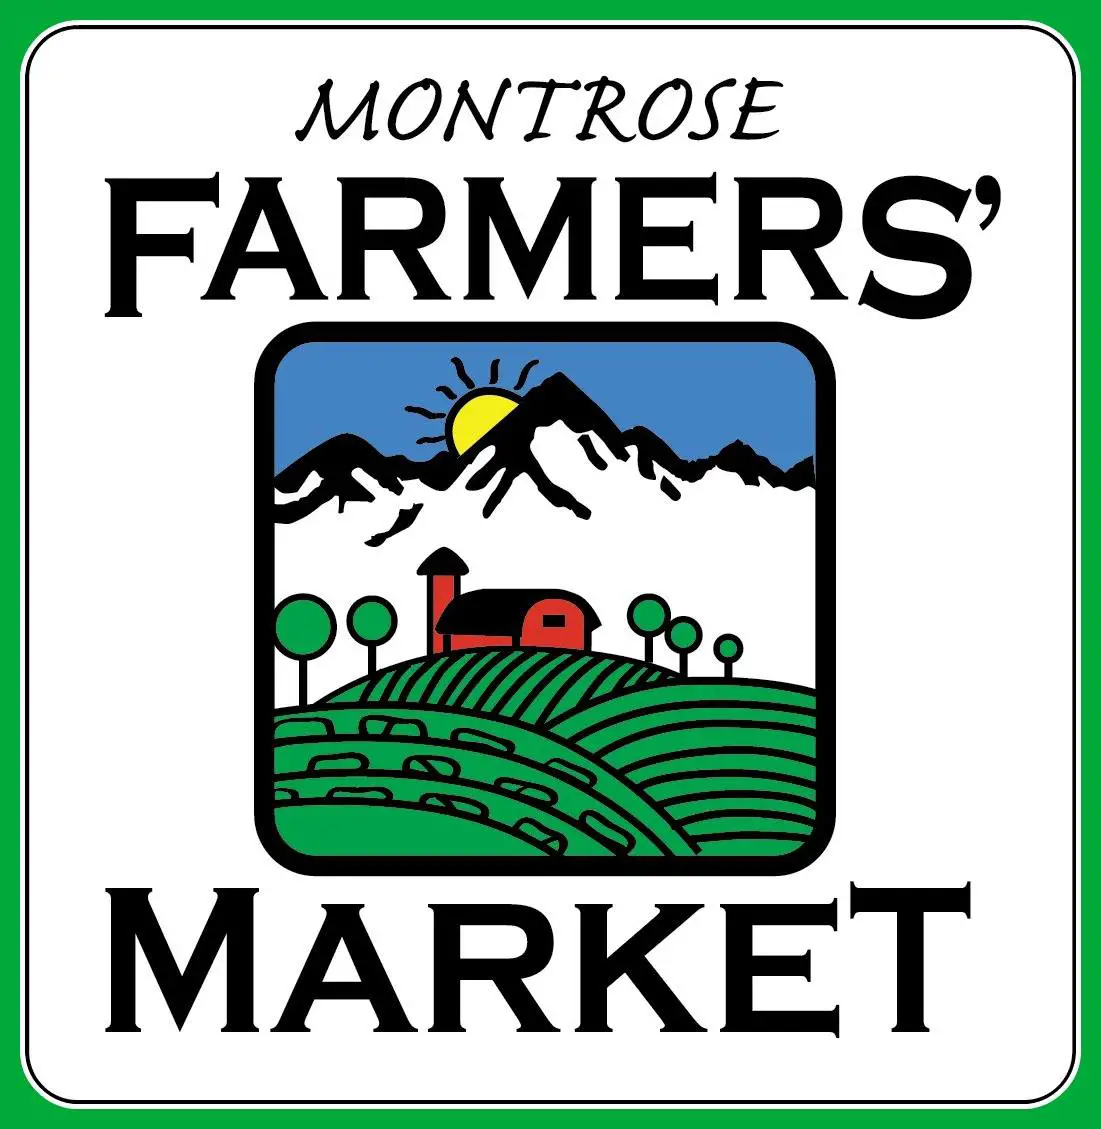 Company logo of Farmers Market